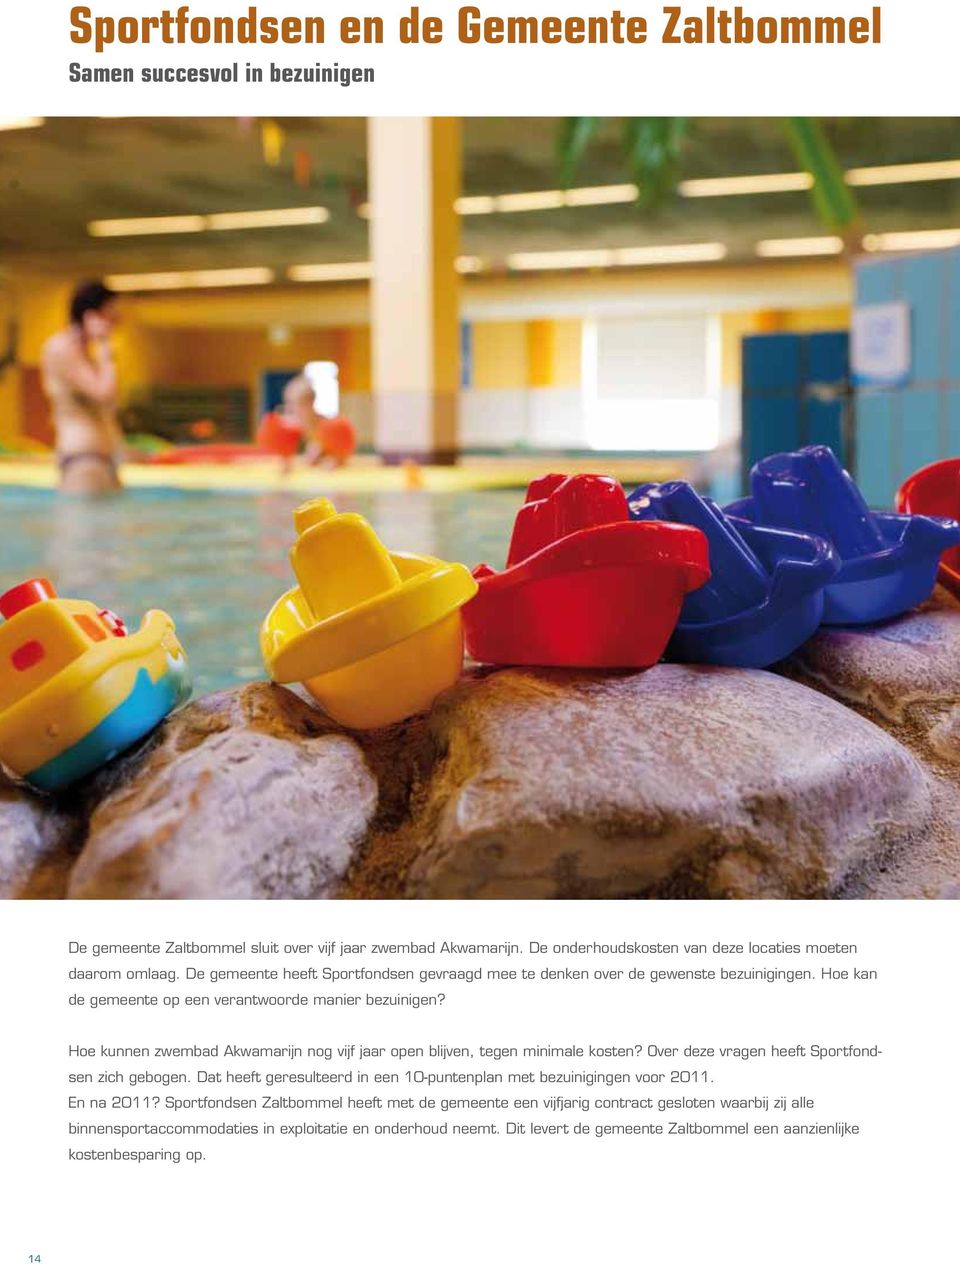 Hoe kunnen zwembad Akwamarijn nog vijf jaar open blijven, tegen minimale kosten? Over deze vragen heeft Sportfondsen zich gebogen.